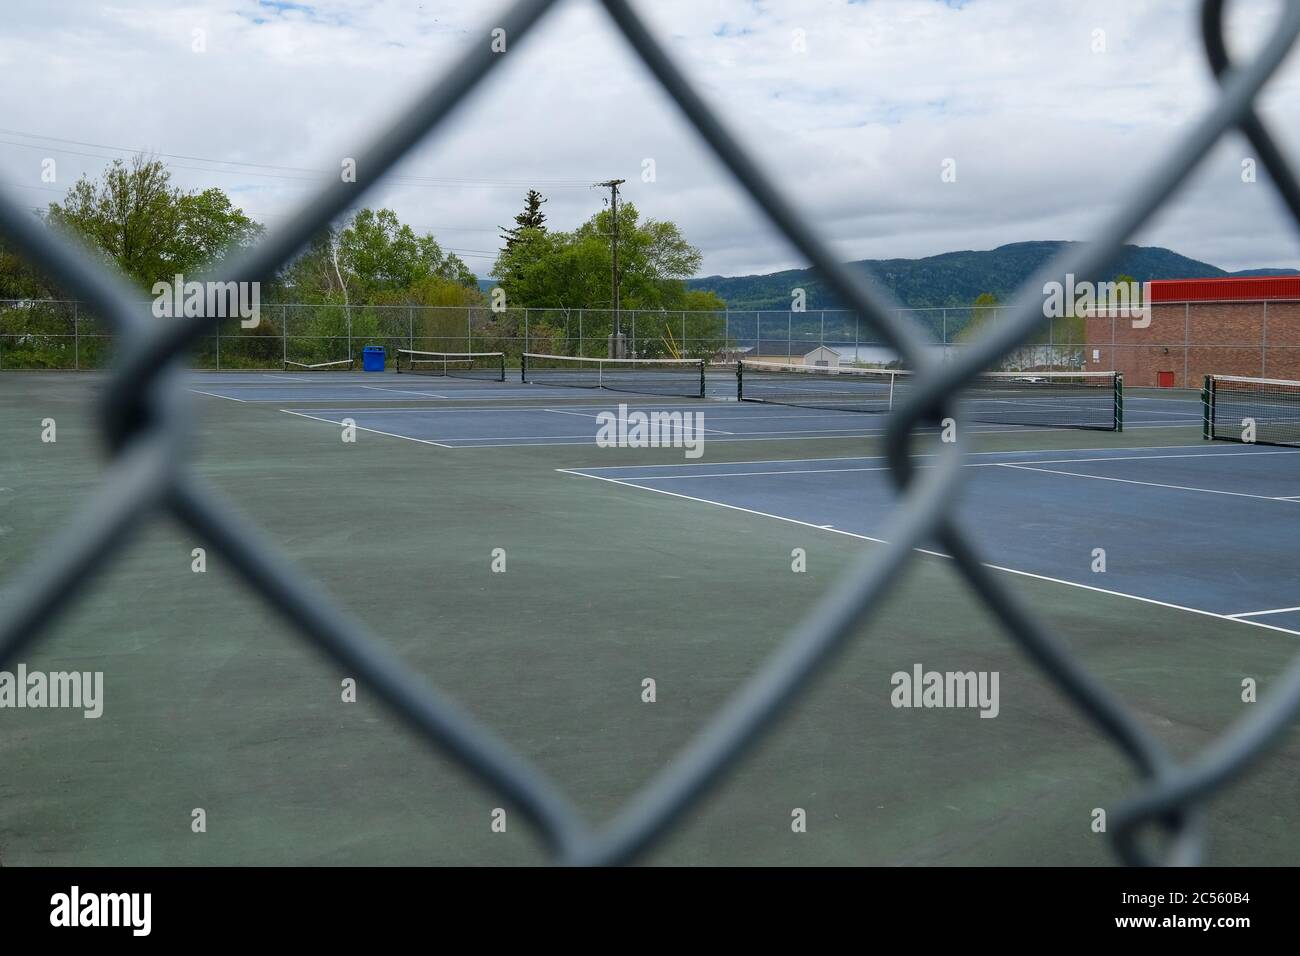 Molteplici campi da tennis all'aperto sotto un cielo nuvoloso. I tribunali sono dipinti di blu e hanno ciascuno una rete che divide i tribunali. Foto Stock